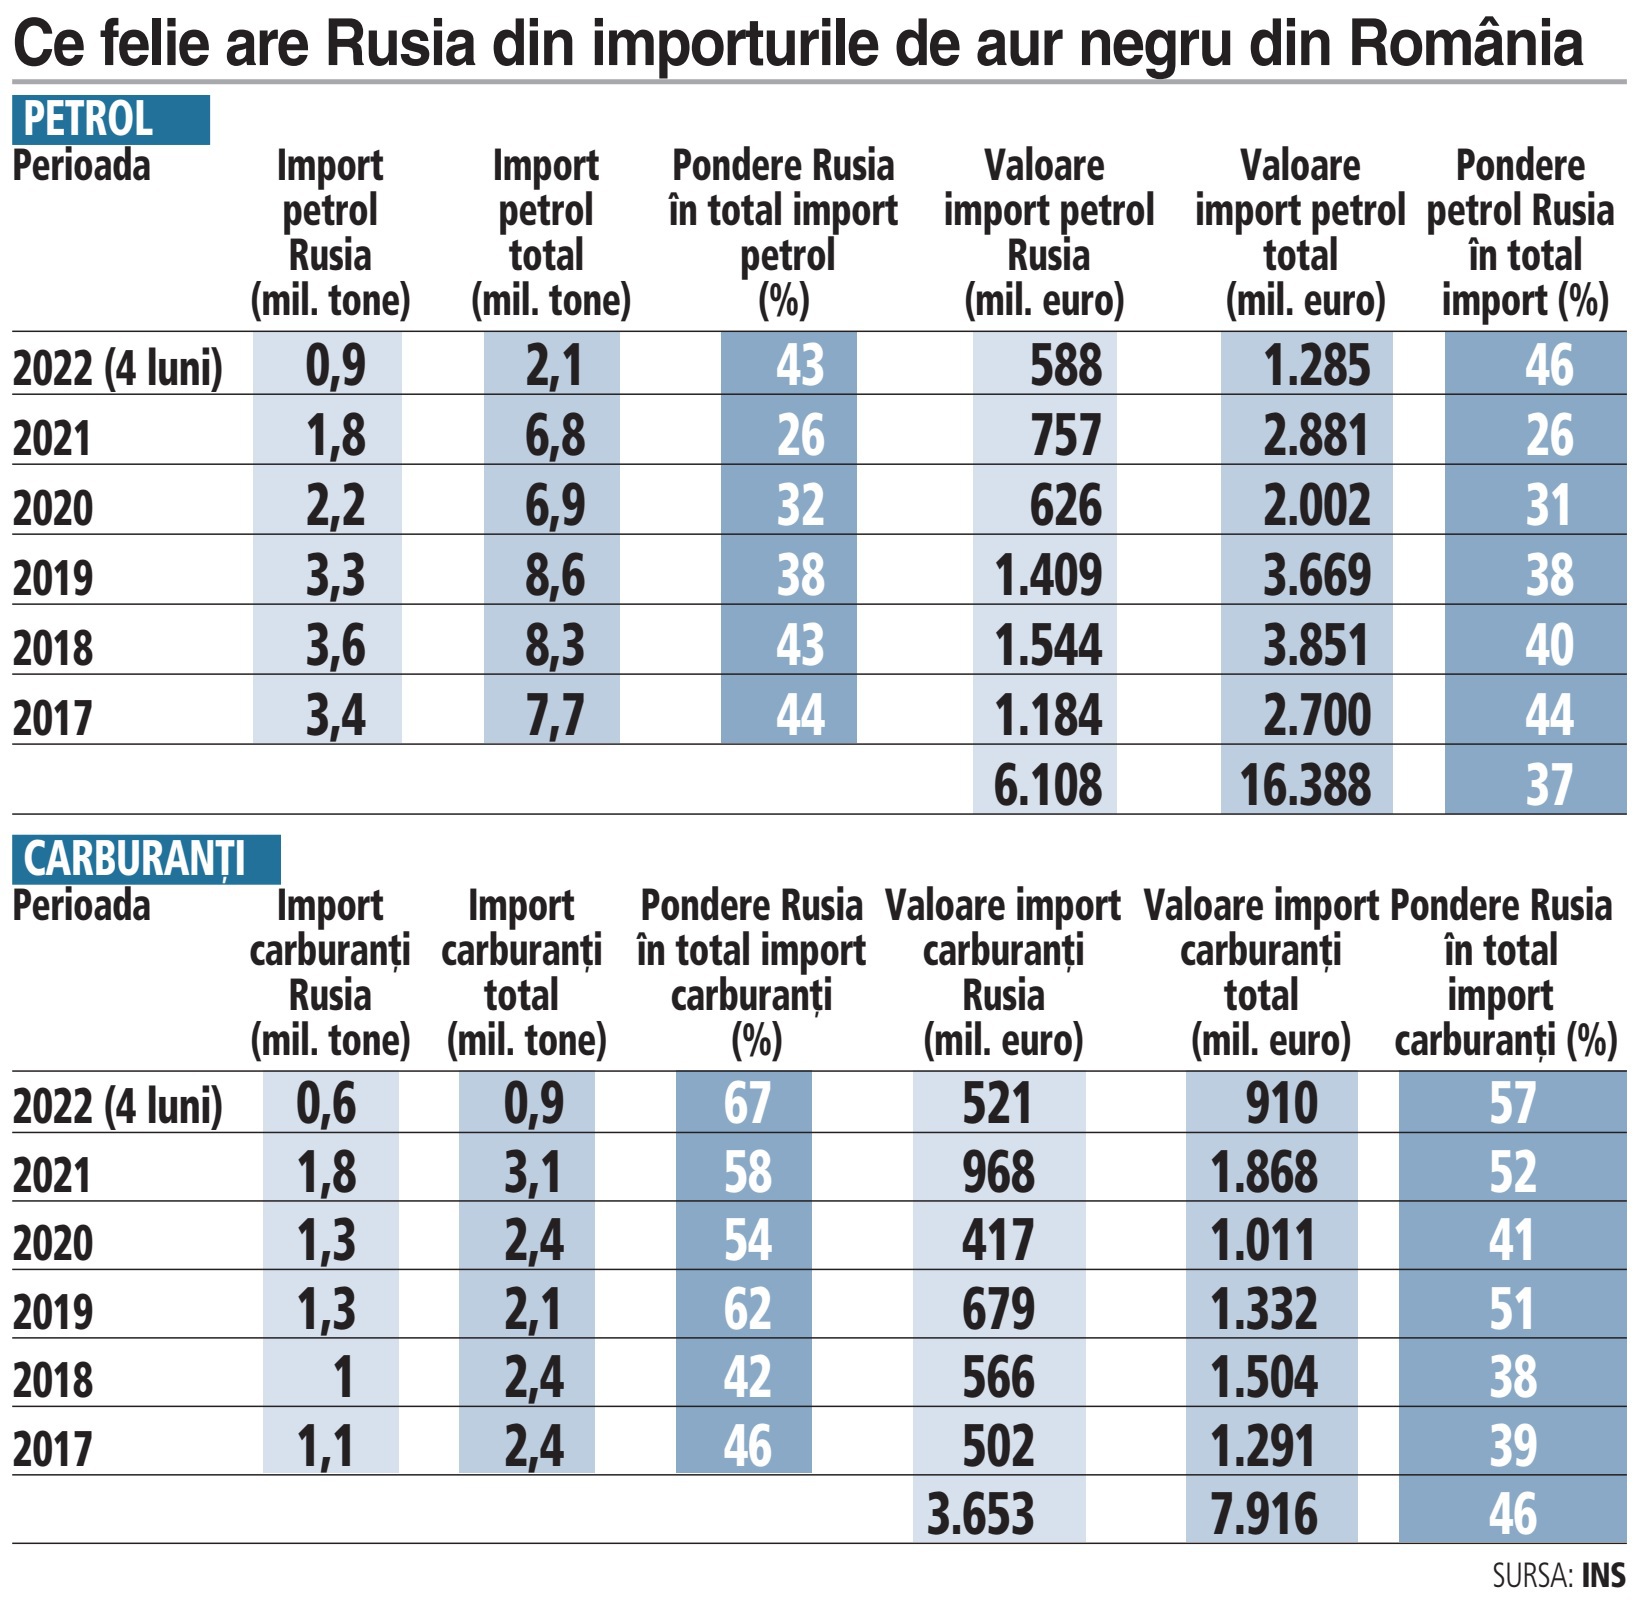 ANALIZĂ. Petrol şi produse petroliere ruseşti de 10 mld. euro au alimentat pompele românilor în ultimii cinci ani. Ce se întâmplă la iarnă? „Sunt soluţii“, spun oamenii din piaţă